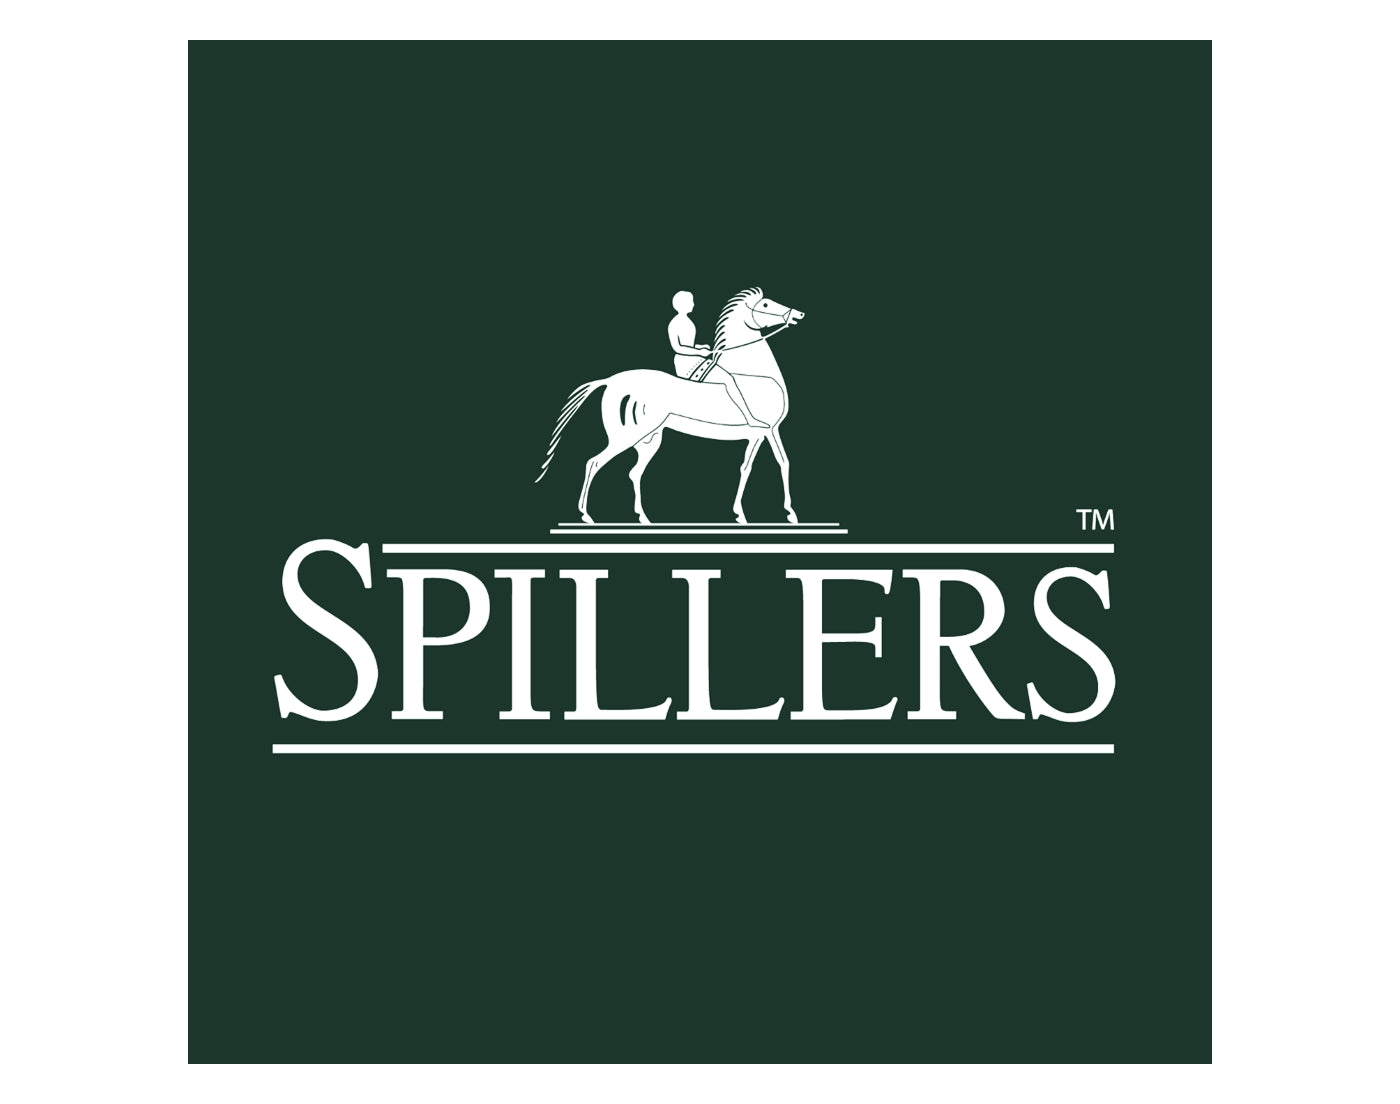 Spillers - High Fibre Cubes 20kg | Horse Feed - Buy Online SPR Centre UK